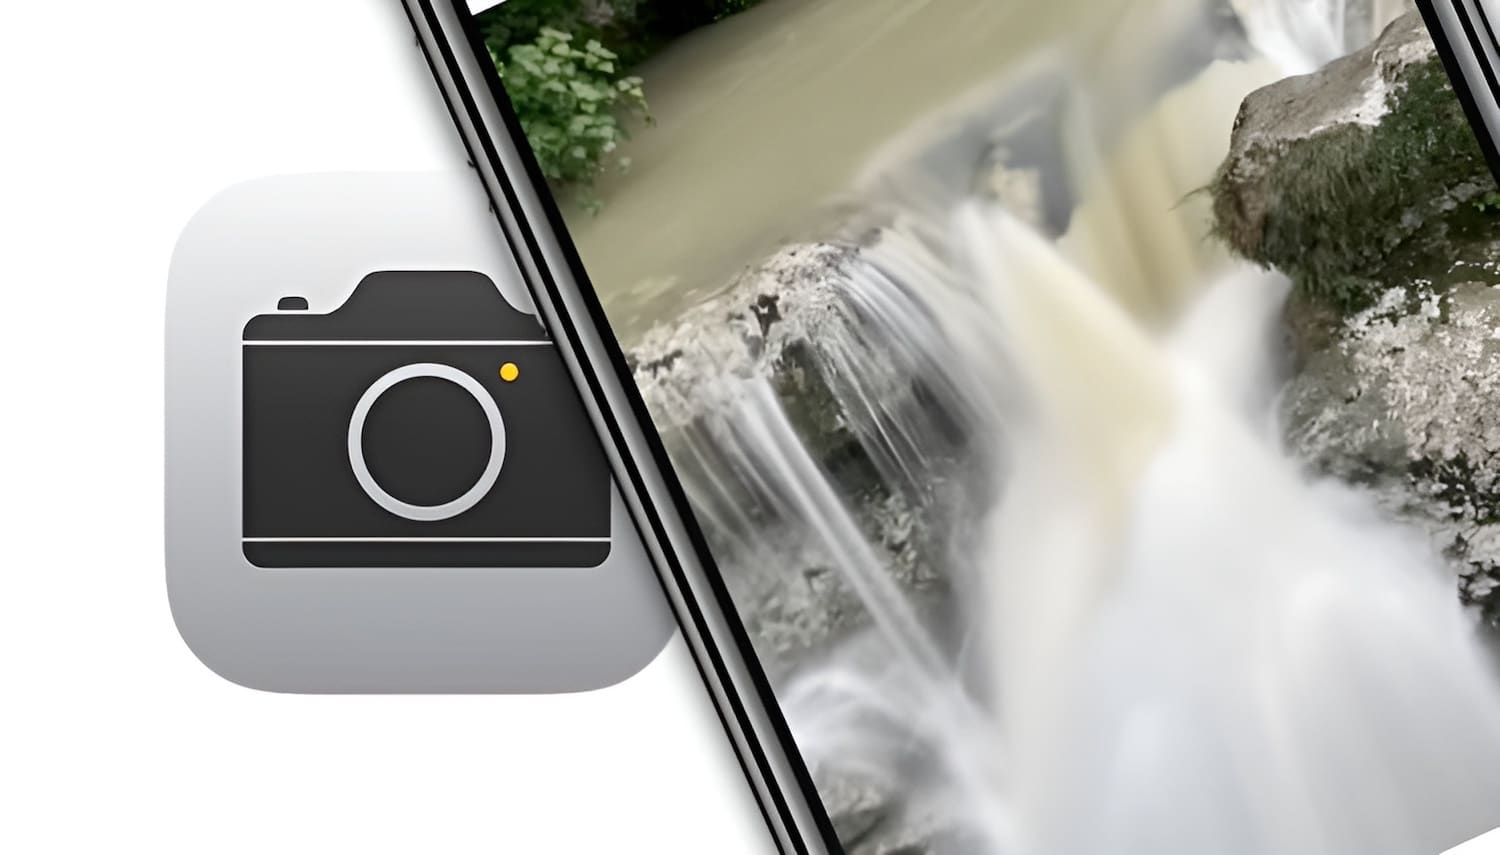 Как сделать фото с эффектом шлейфа (длинной выдержкой) на iPhone: 2 способа